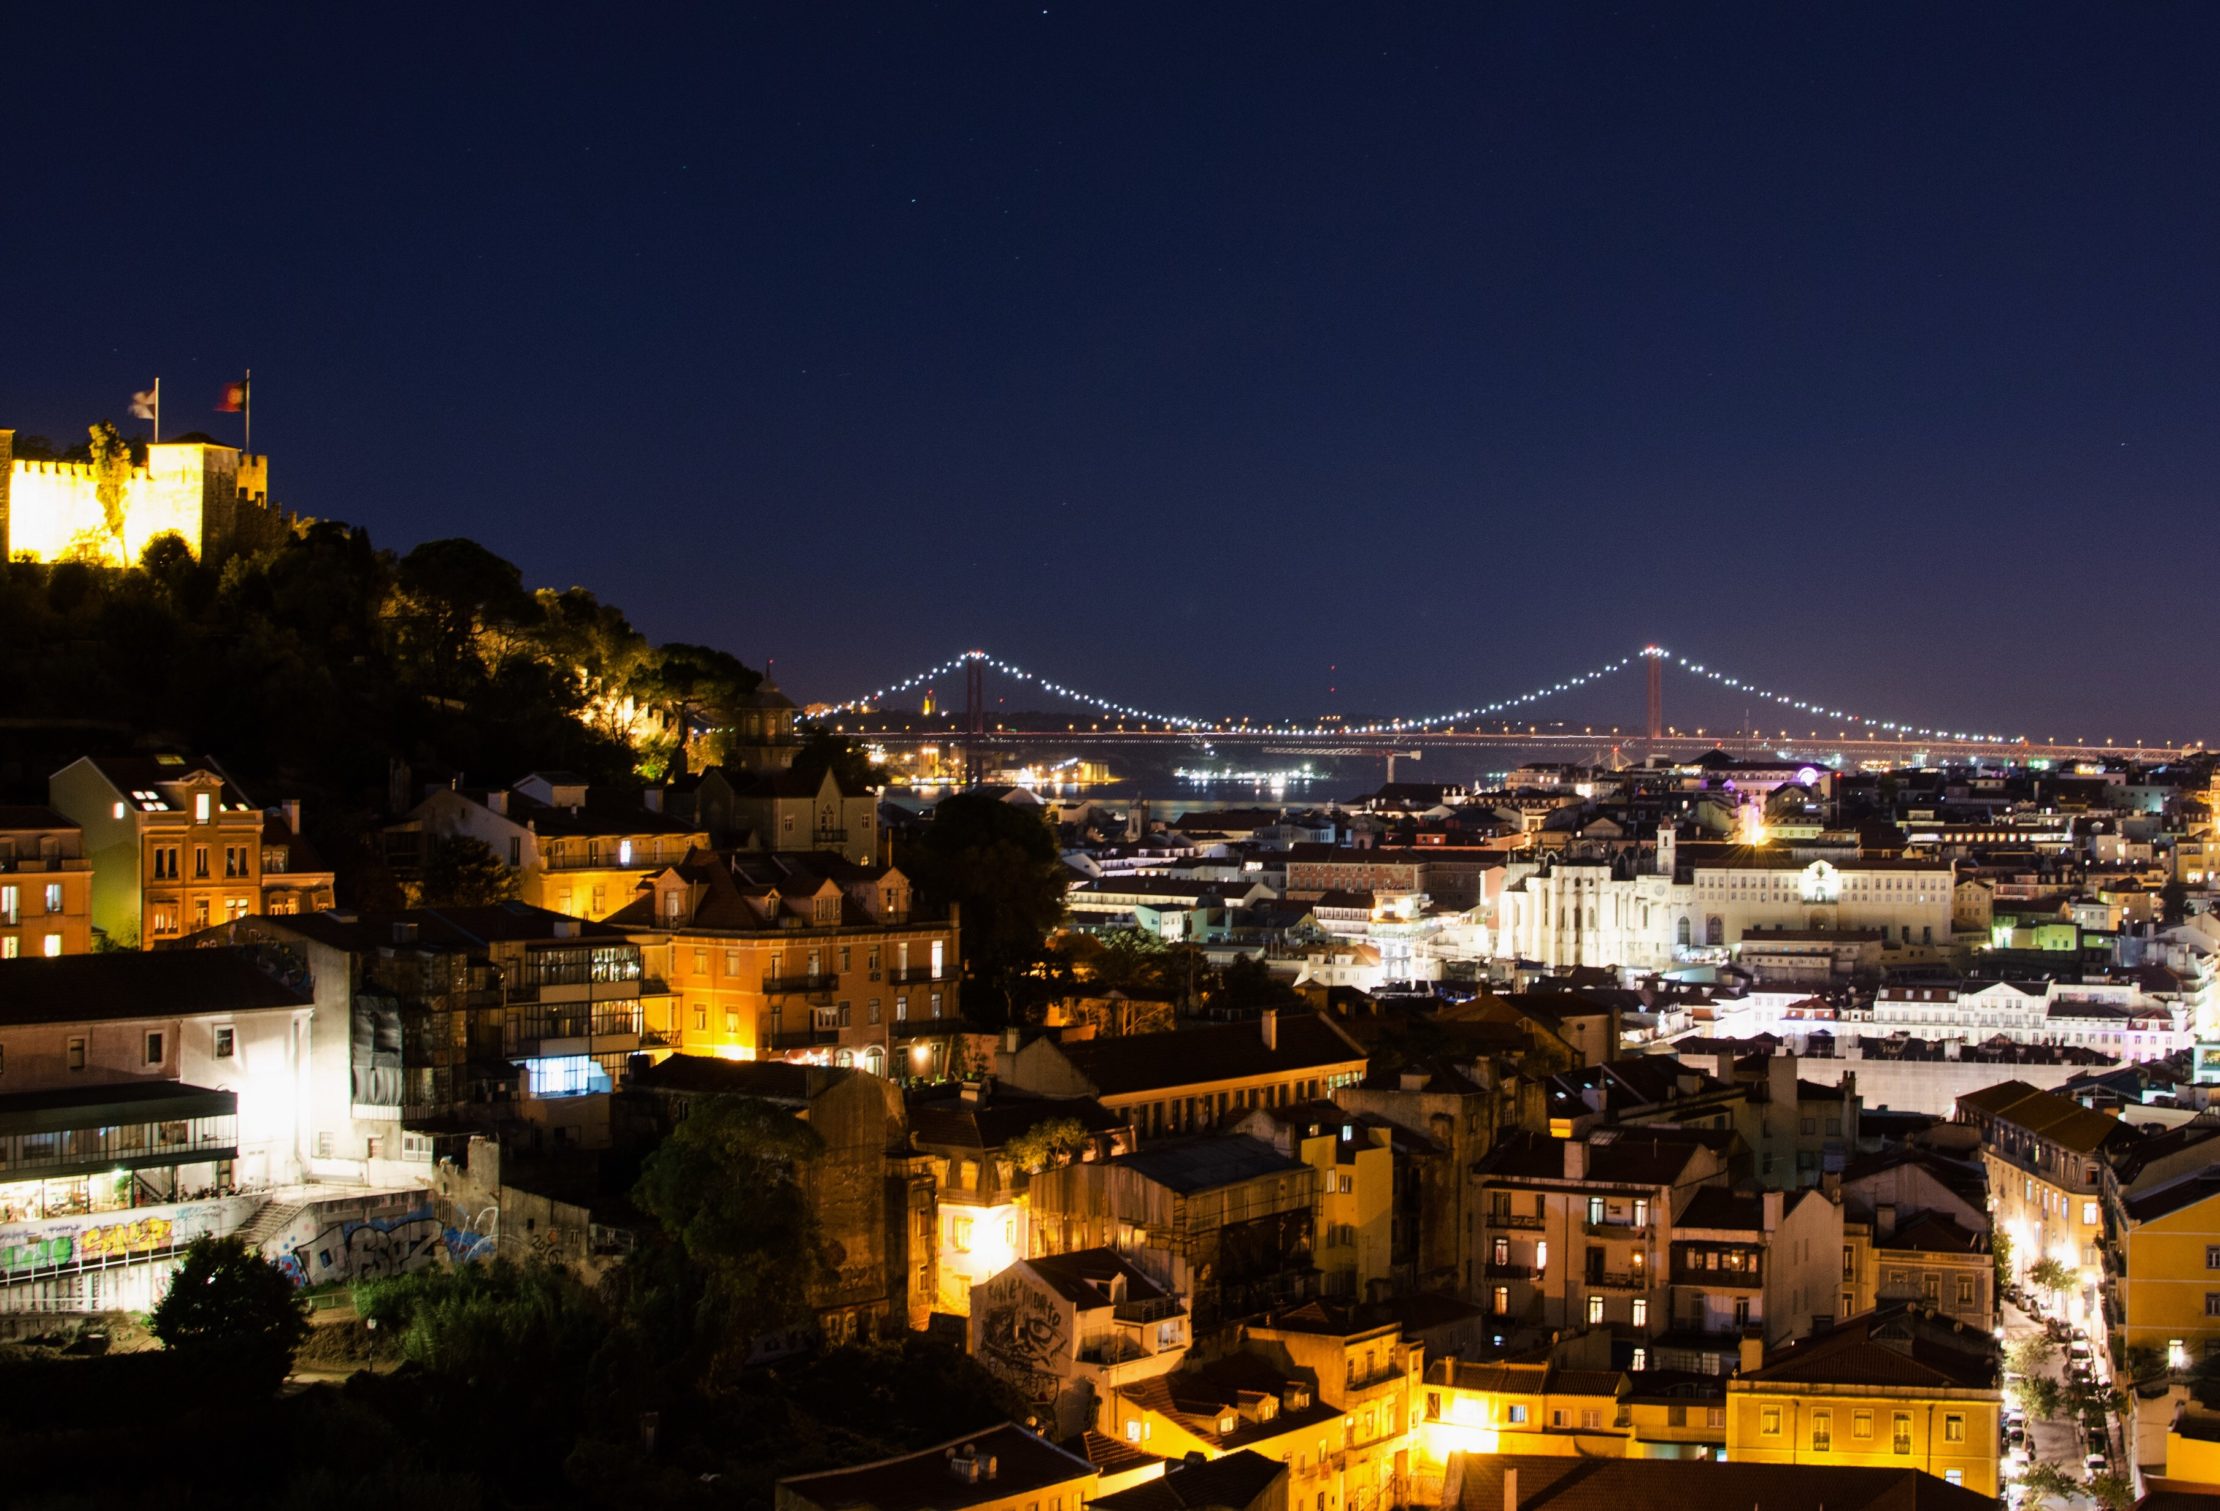 Vista nocturna desde un mirador en Lisboa